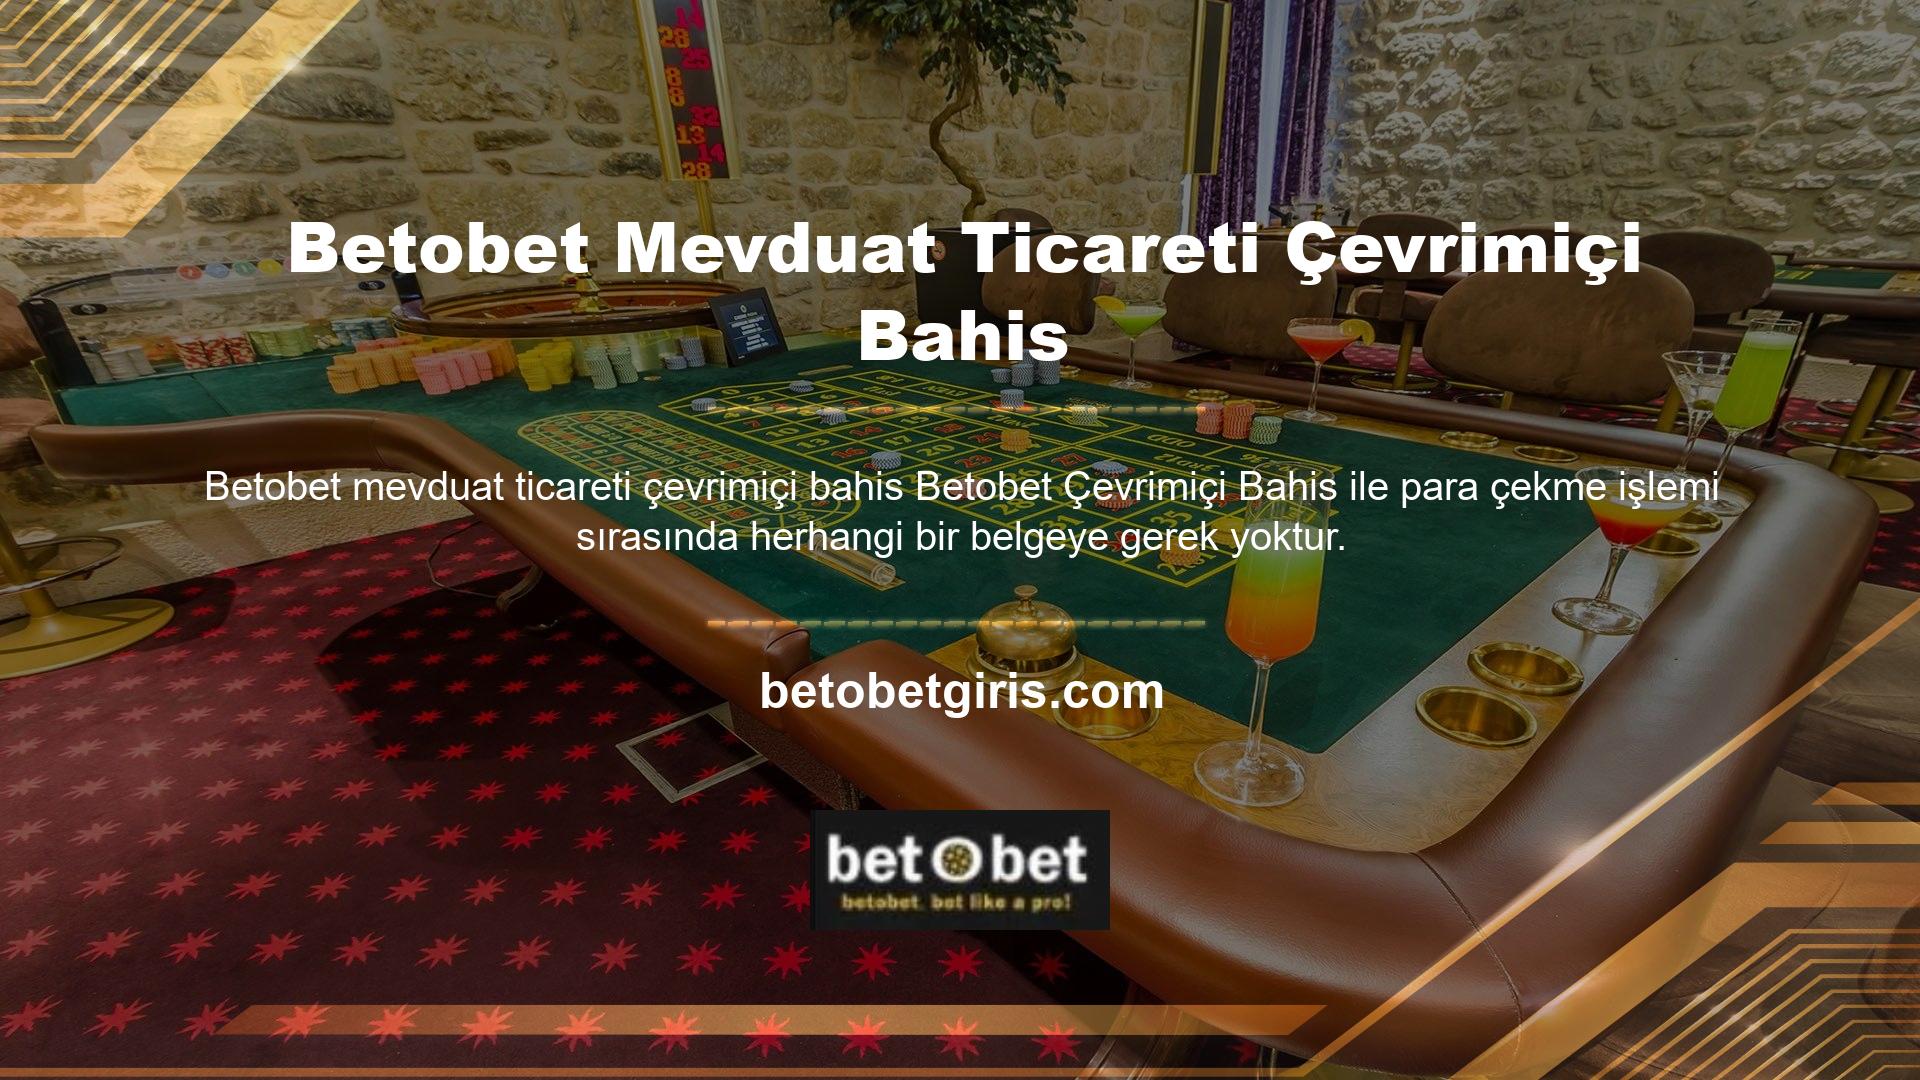 Betobet, çevrimiçi casino için dosyasız ve Betobet web sitelerinden biridir